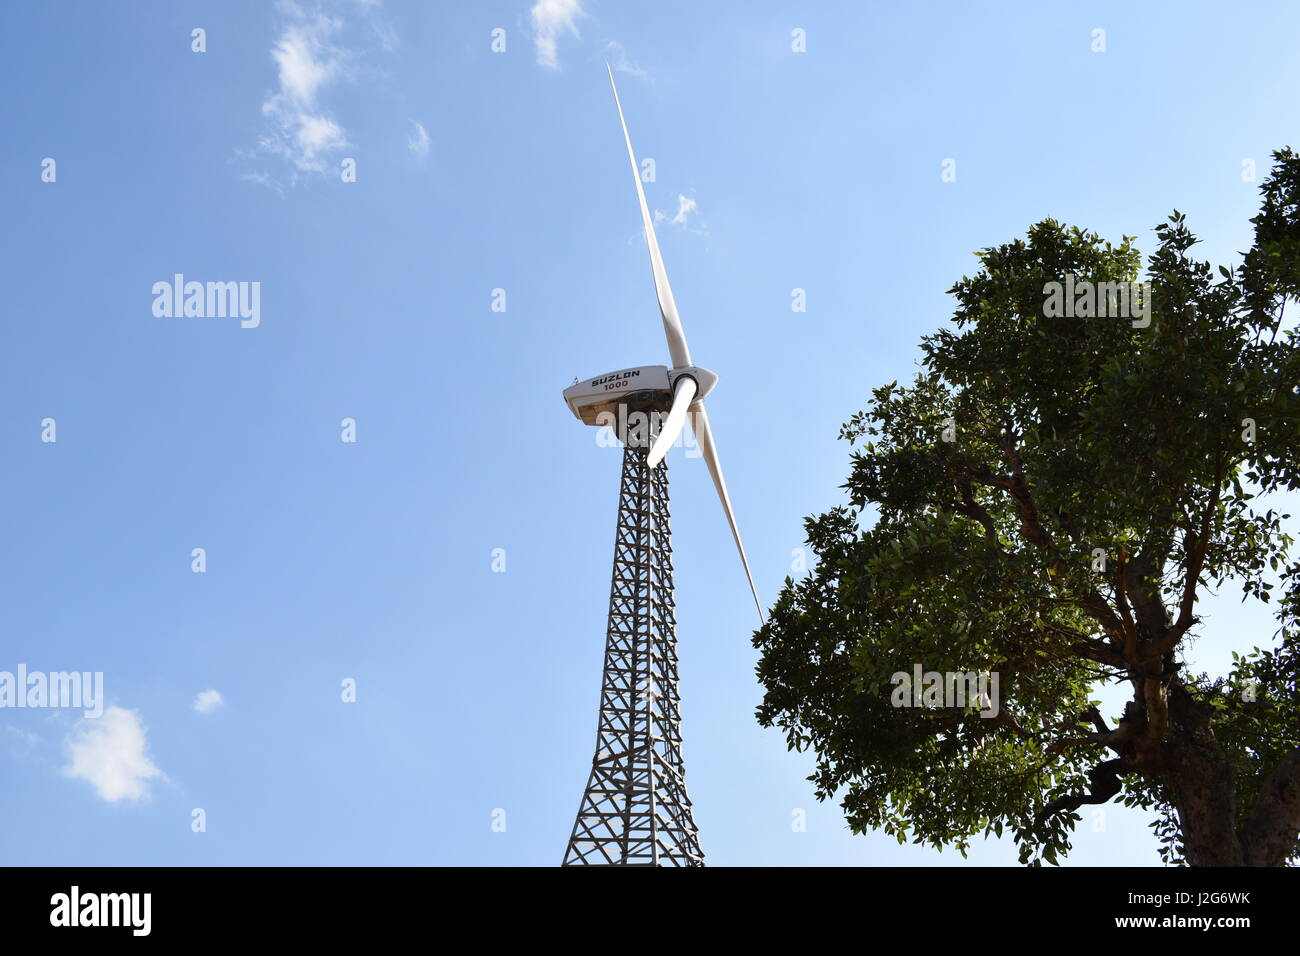 Suzlon wind turbine Vue de côté avec un arbre. Banque D'Images